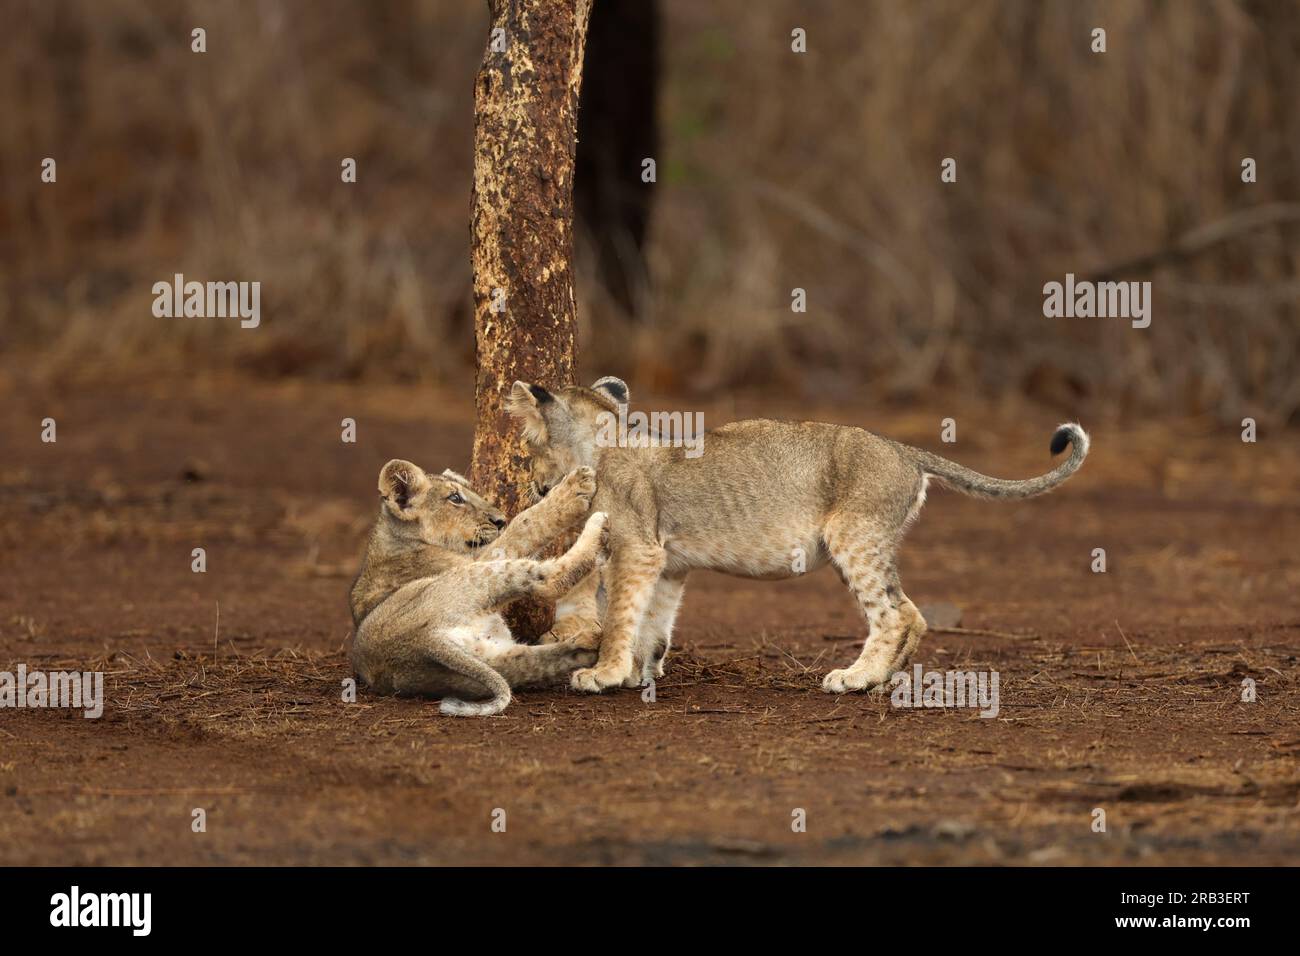 Es ist Spielzeit. Gir National Park & Sanctuary, Gujarat, Indien: HERZERWÄRMENDE Bilder der süßesten asiatischen Löwenjungen, die spielen, kuscheln und ihre c Stockfoto